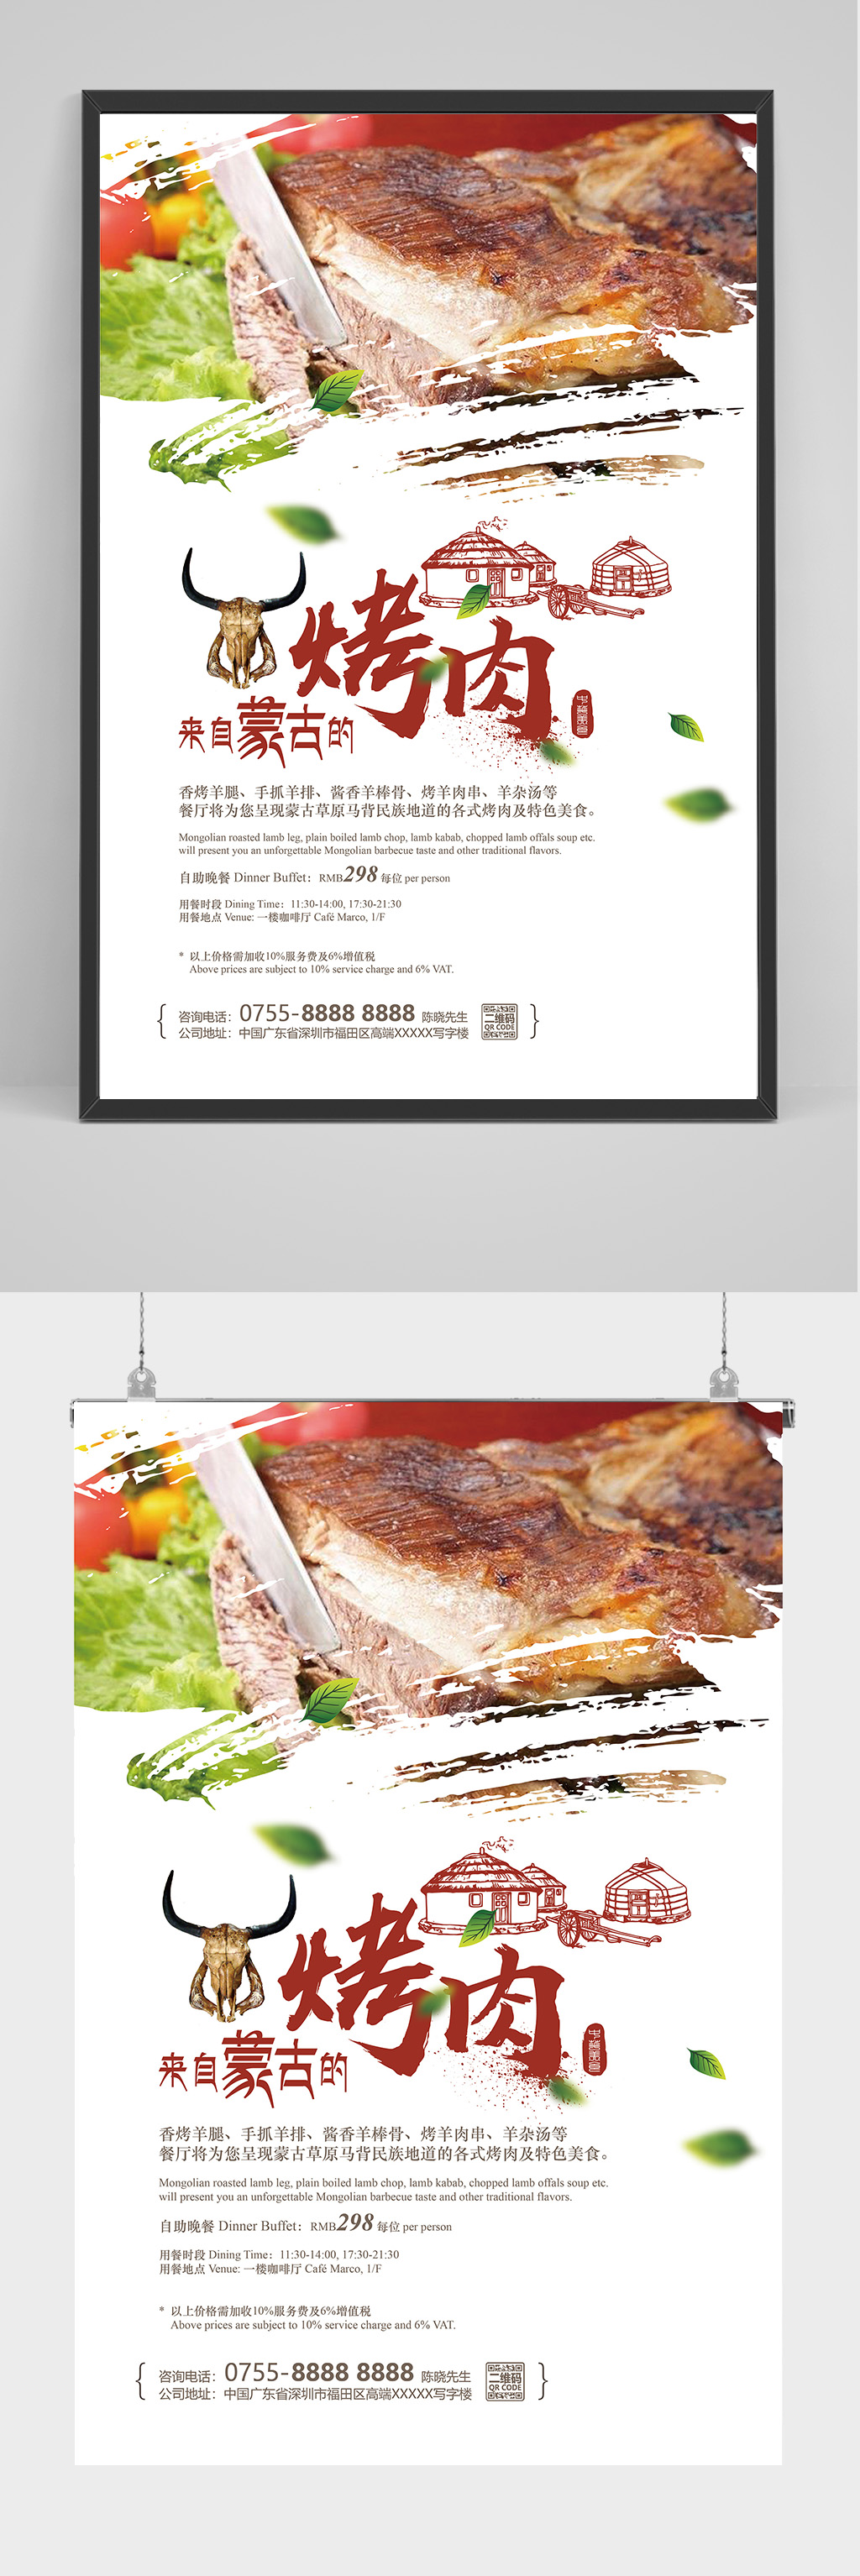 蒙古烤肉海报设计